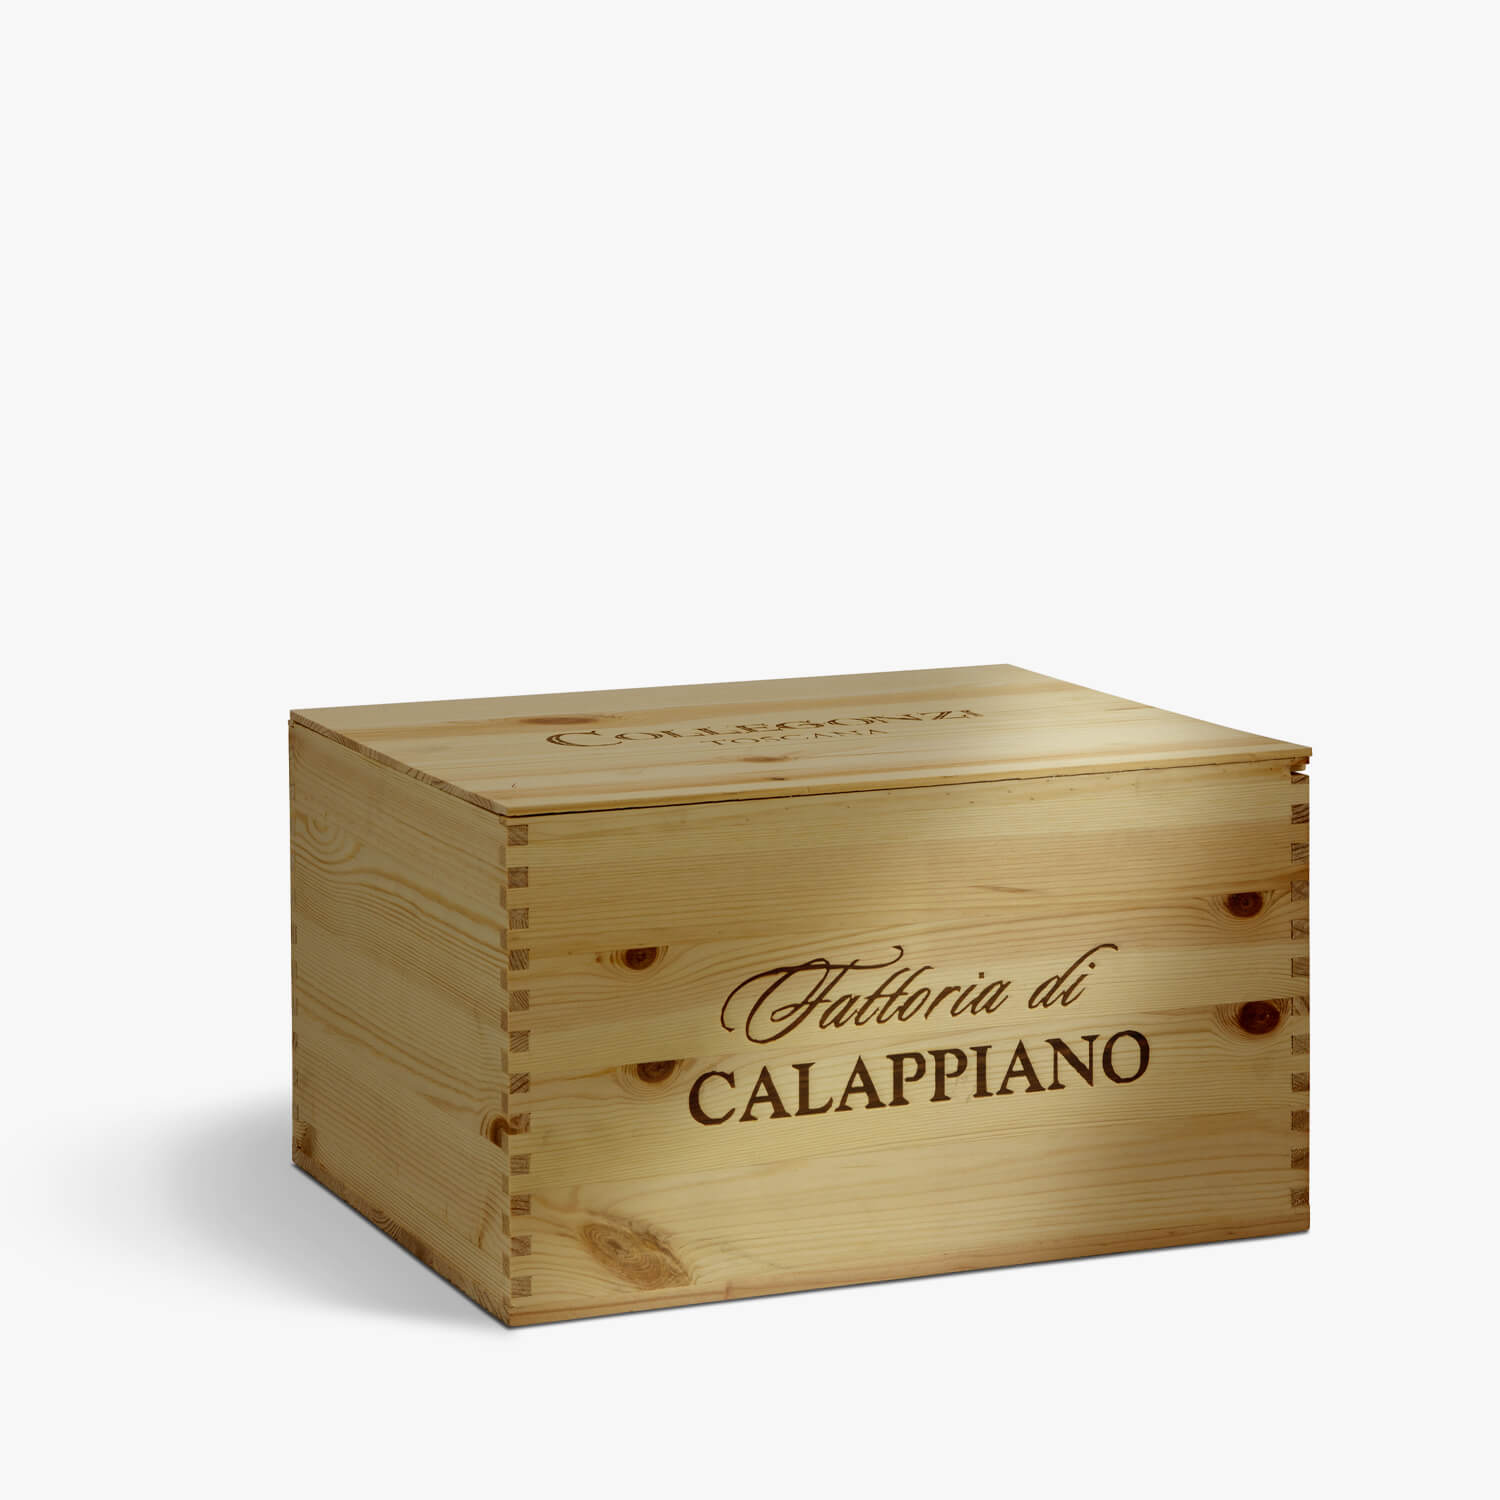 Collegonzi / 6-bottle wooden box